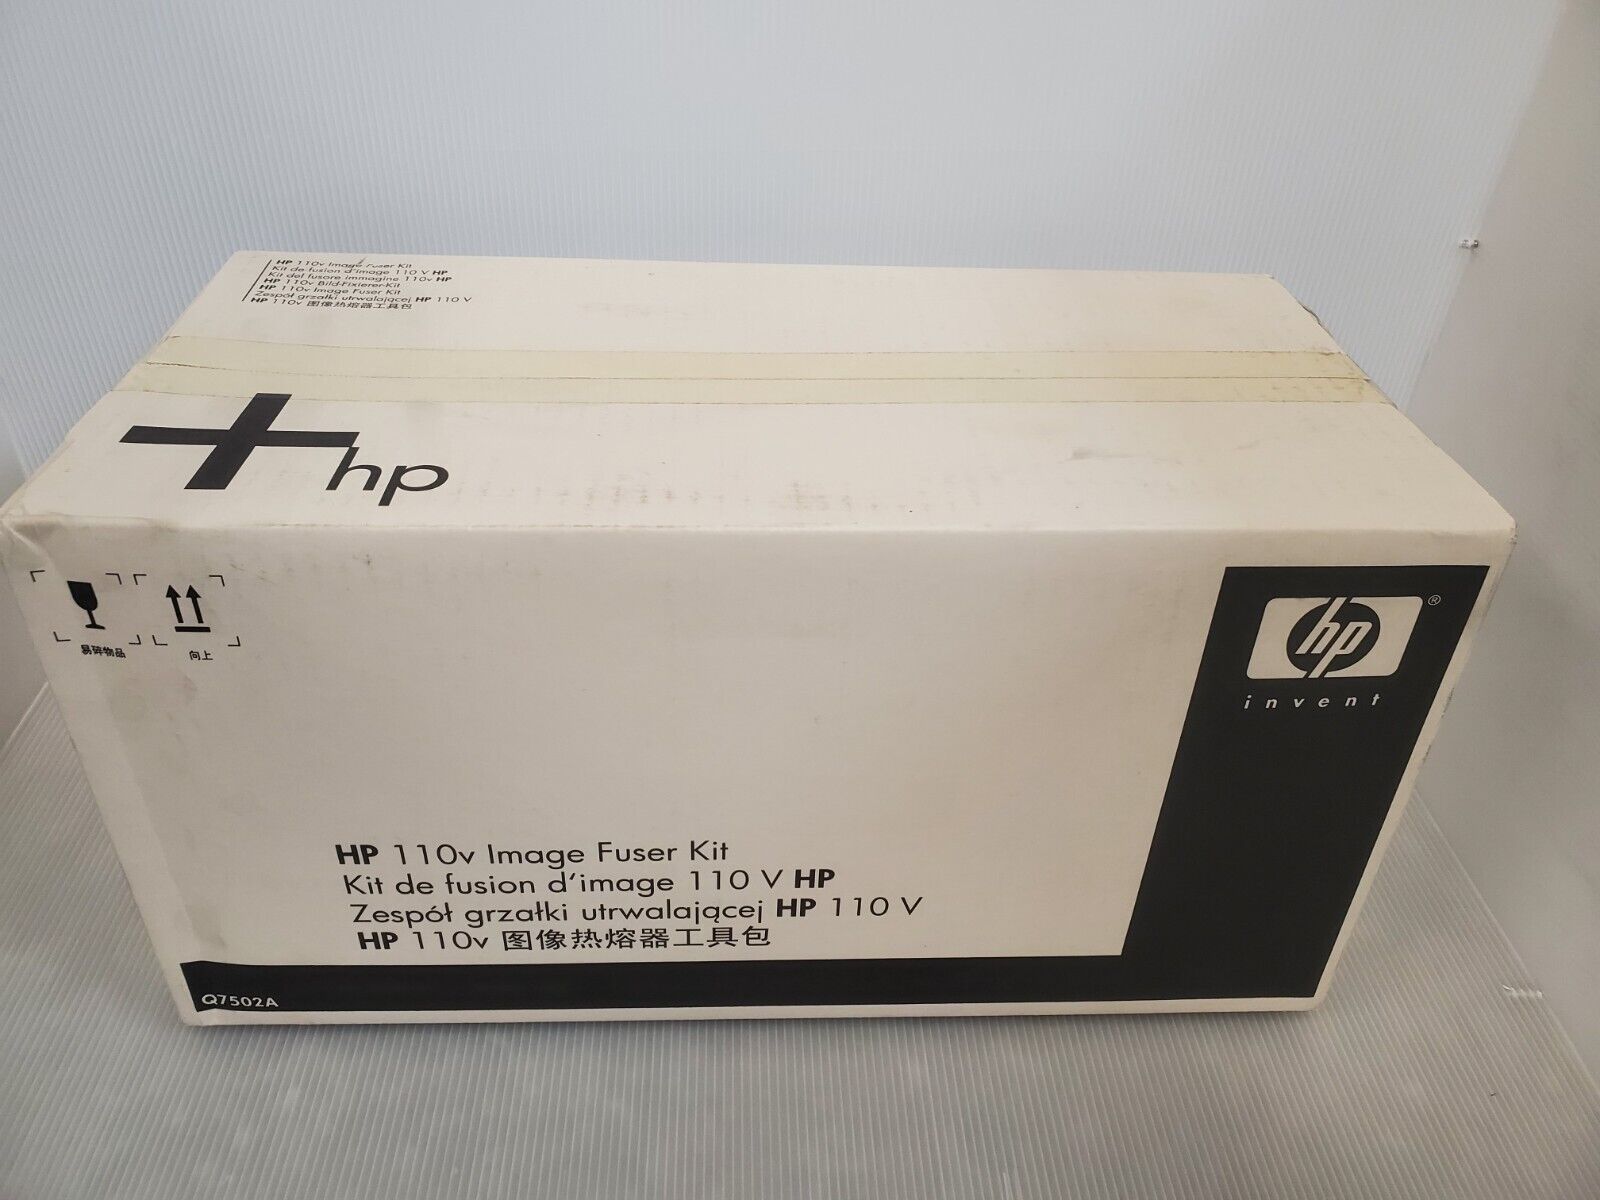 Hp Q7502 Fuser Hit For Laserjet 4700, Cp4005 Genuine Sealed Box